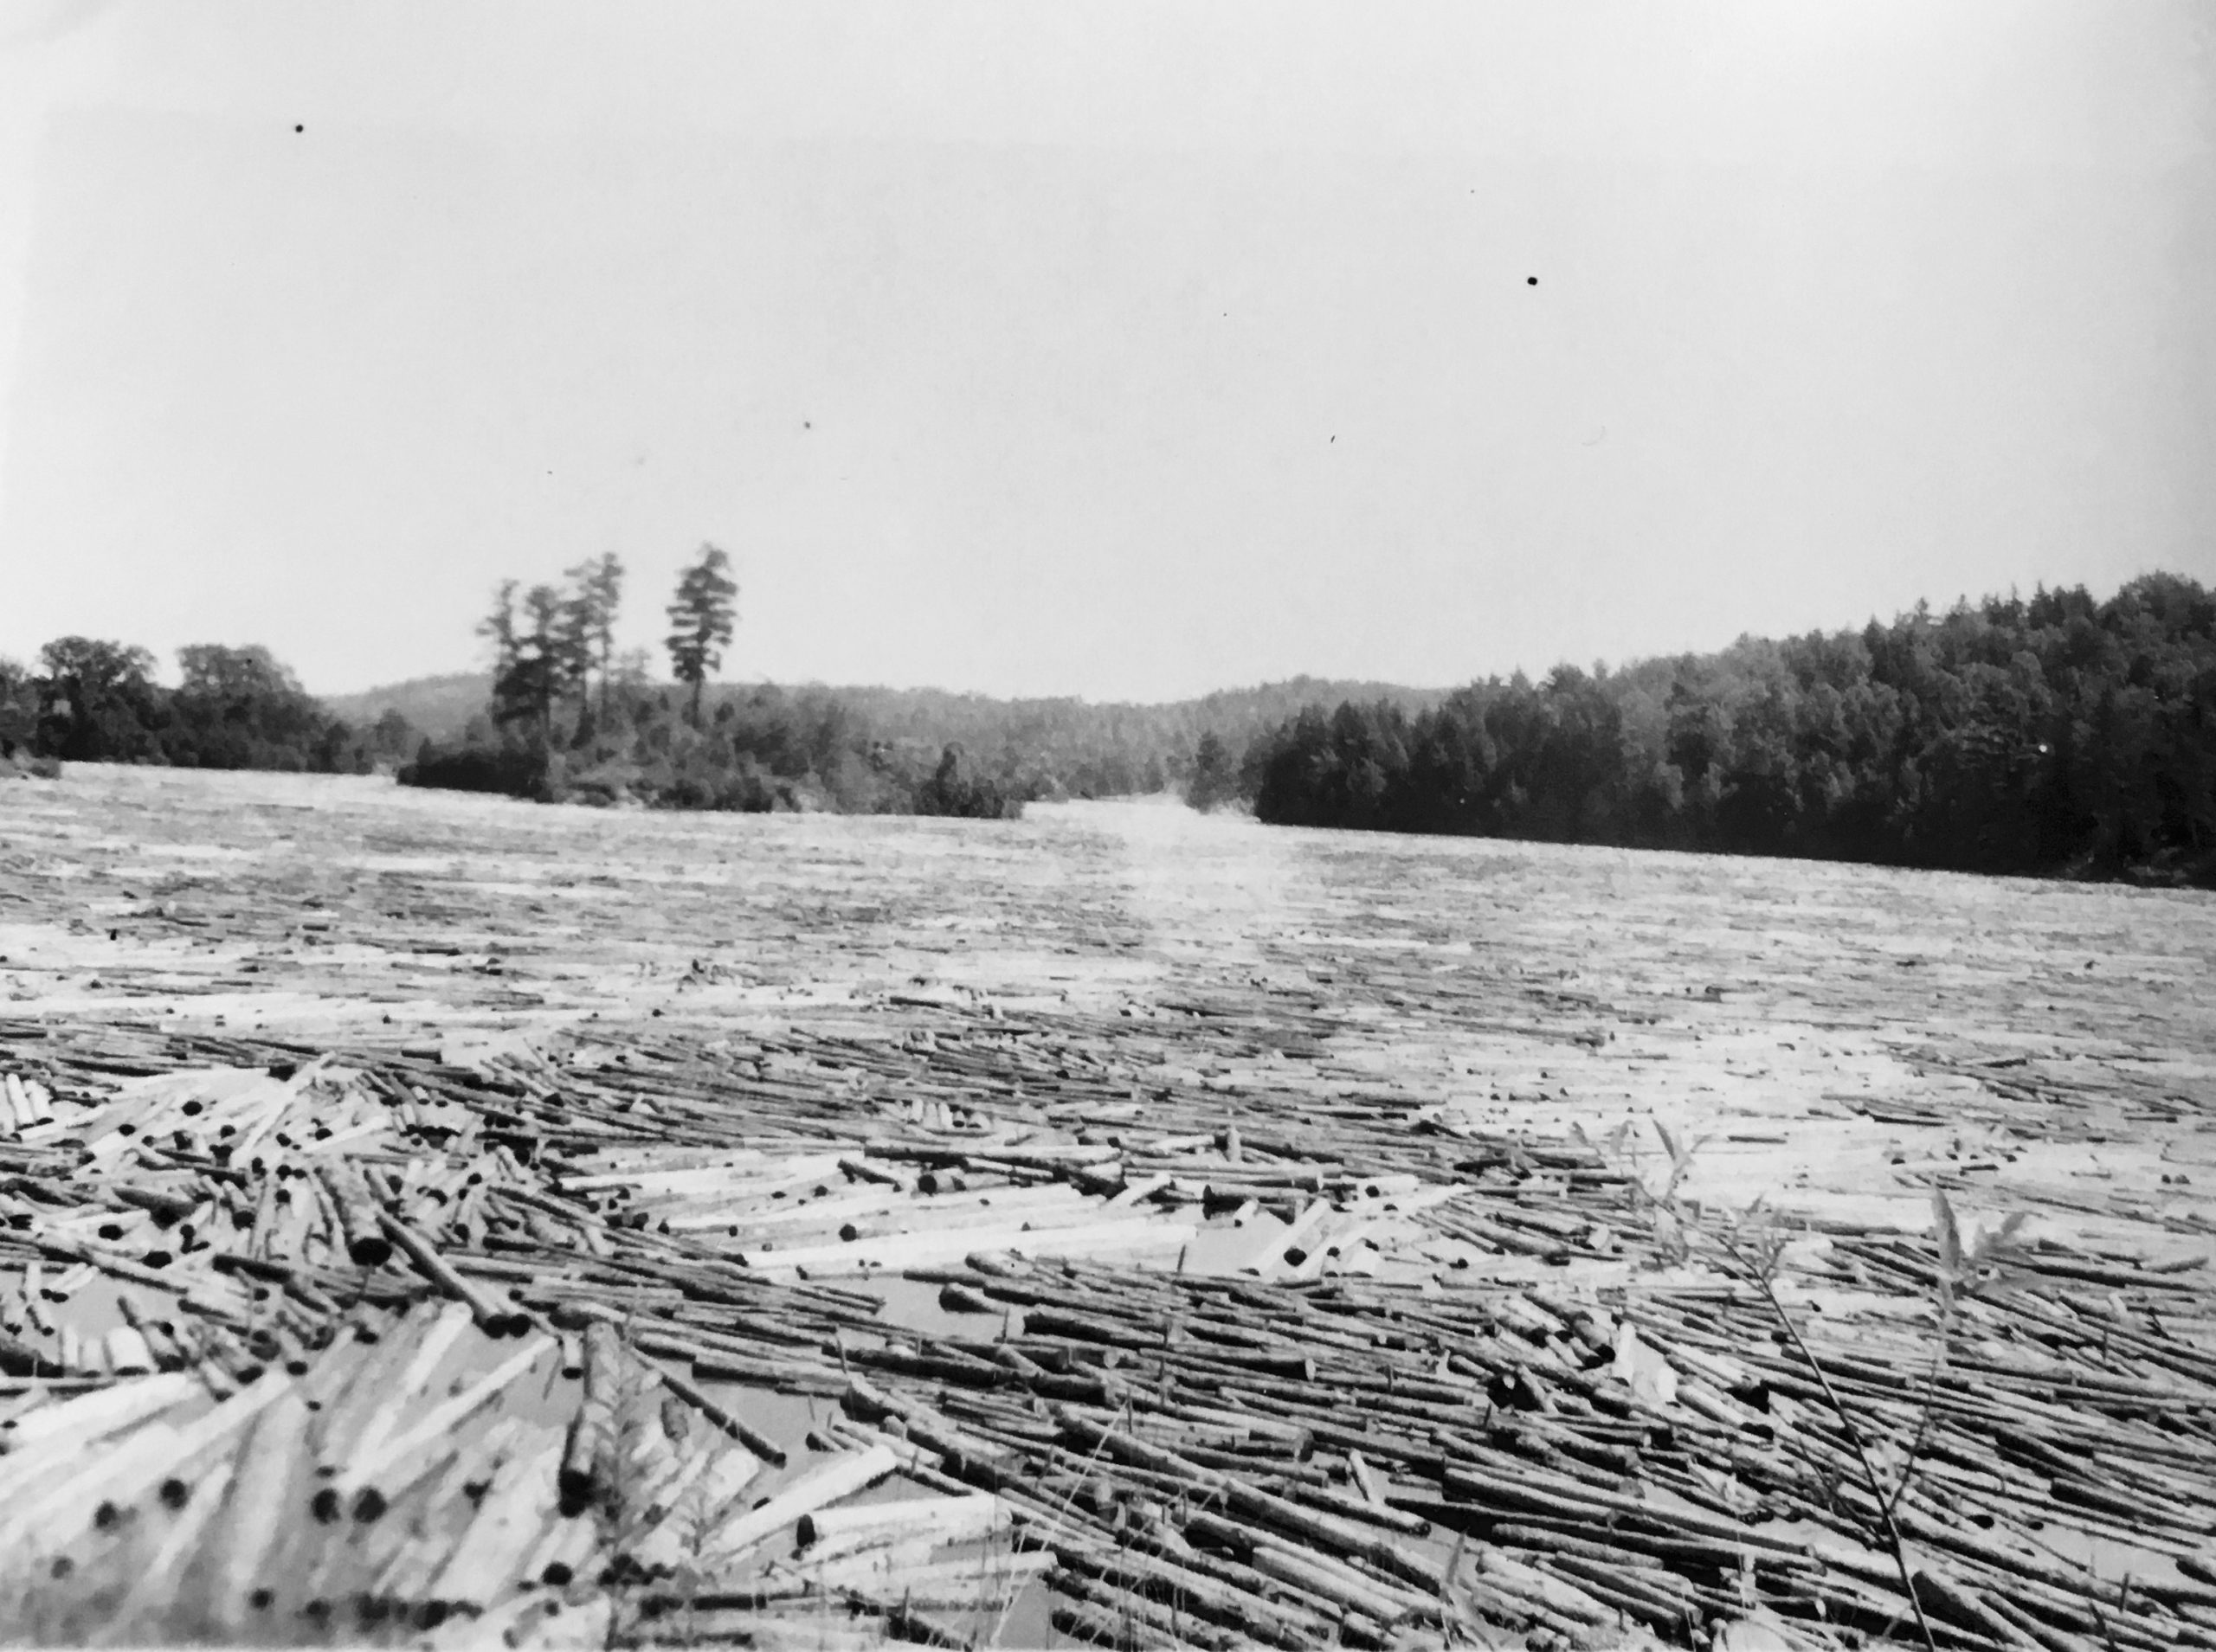 Des billots de bois qui flottent dans un cours d'eau (drave).